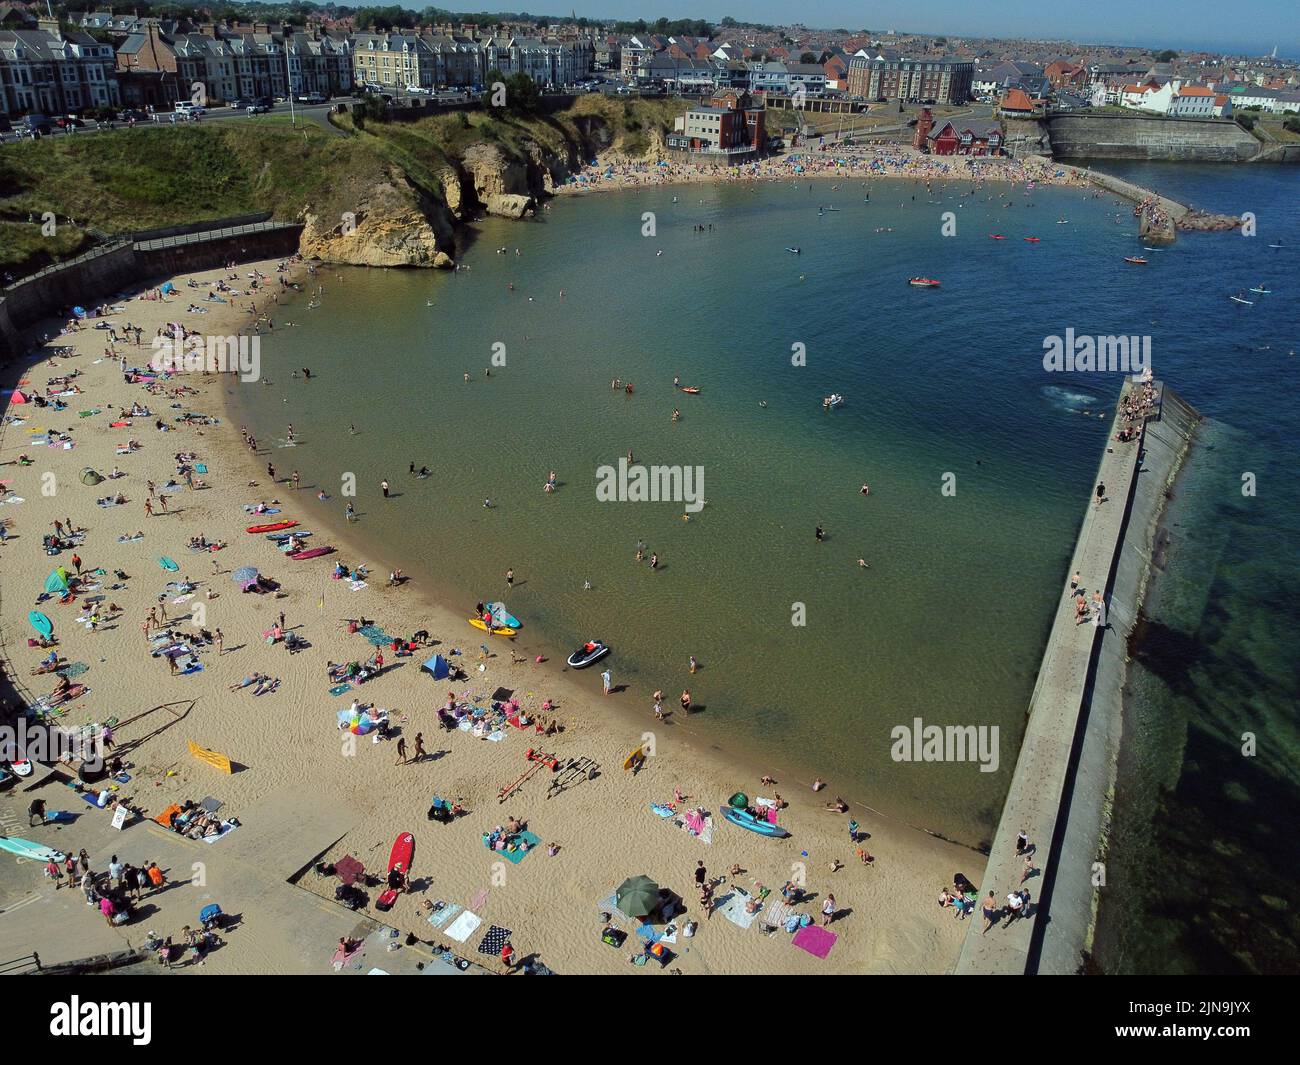 Una vista aérea de la gente disfrutando del clima caluroso en la playa de la bahía de Cullercoats en North Tyneside. La Oficina del MET ha emitido una advertencia ámbar sobre las condiciones de calor extremo que cubre cuatro días, de jueves a domingo, en algunas partes de Inglaterra y Gales a medida que se avecina una nueva ola de calor. Fecha de la foto: Miércoles 10 de agosto de 2022. Foto de stock